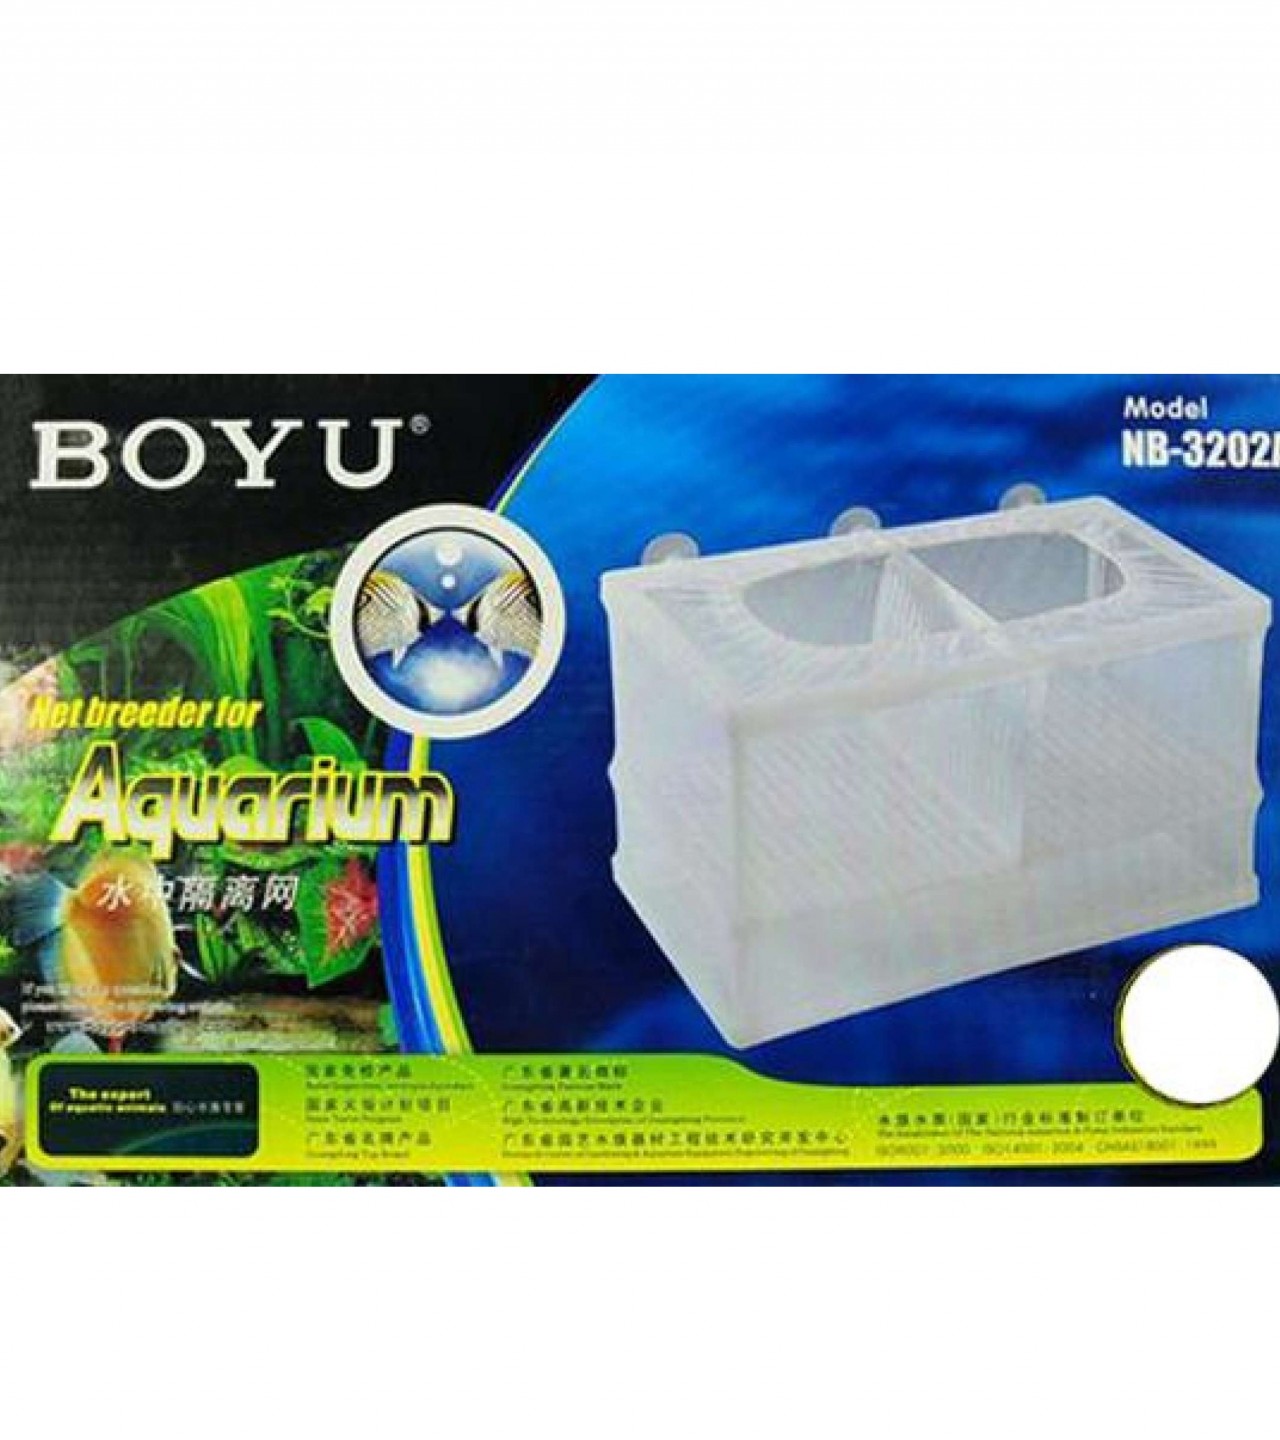 BOYU NB-3202A Net Breeder for Fish